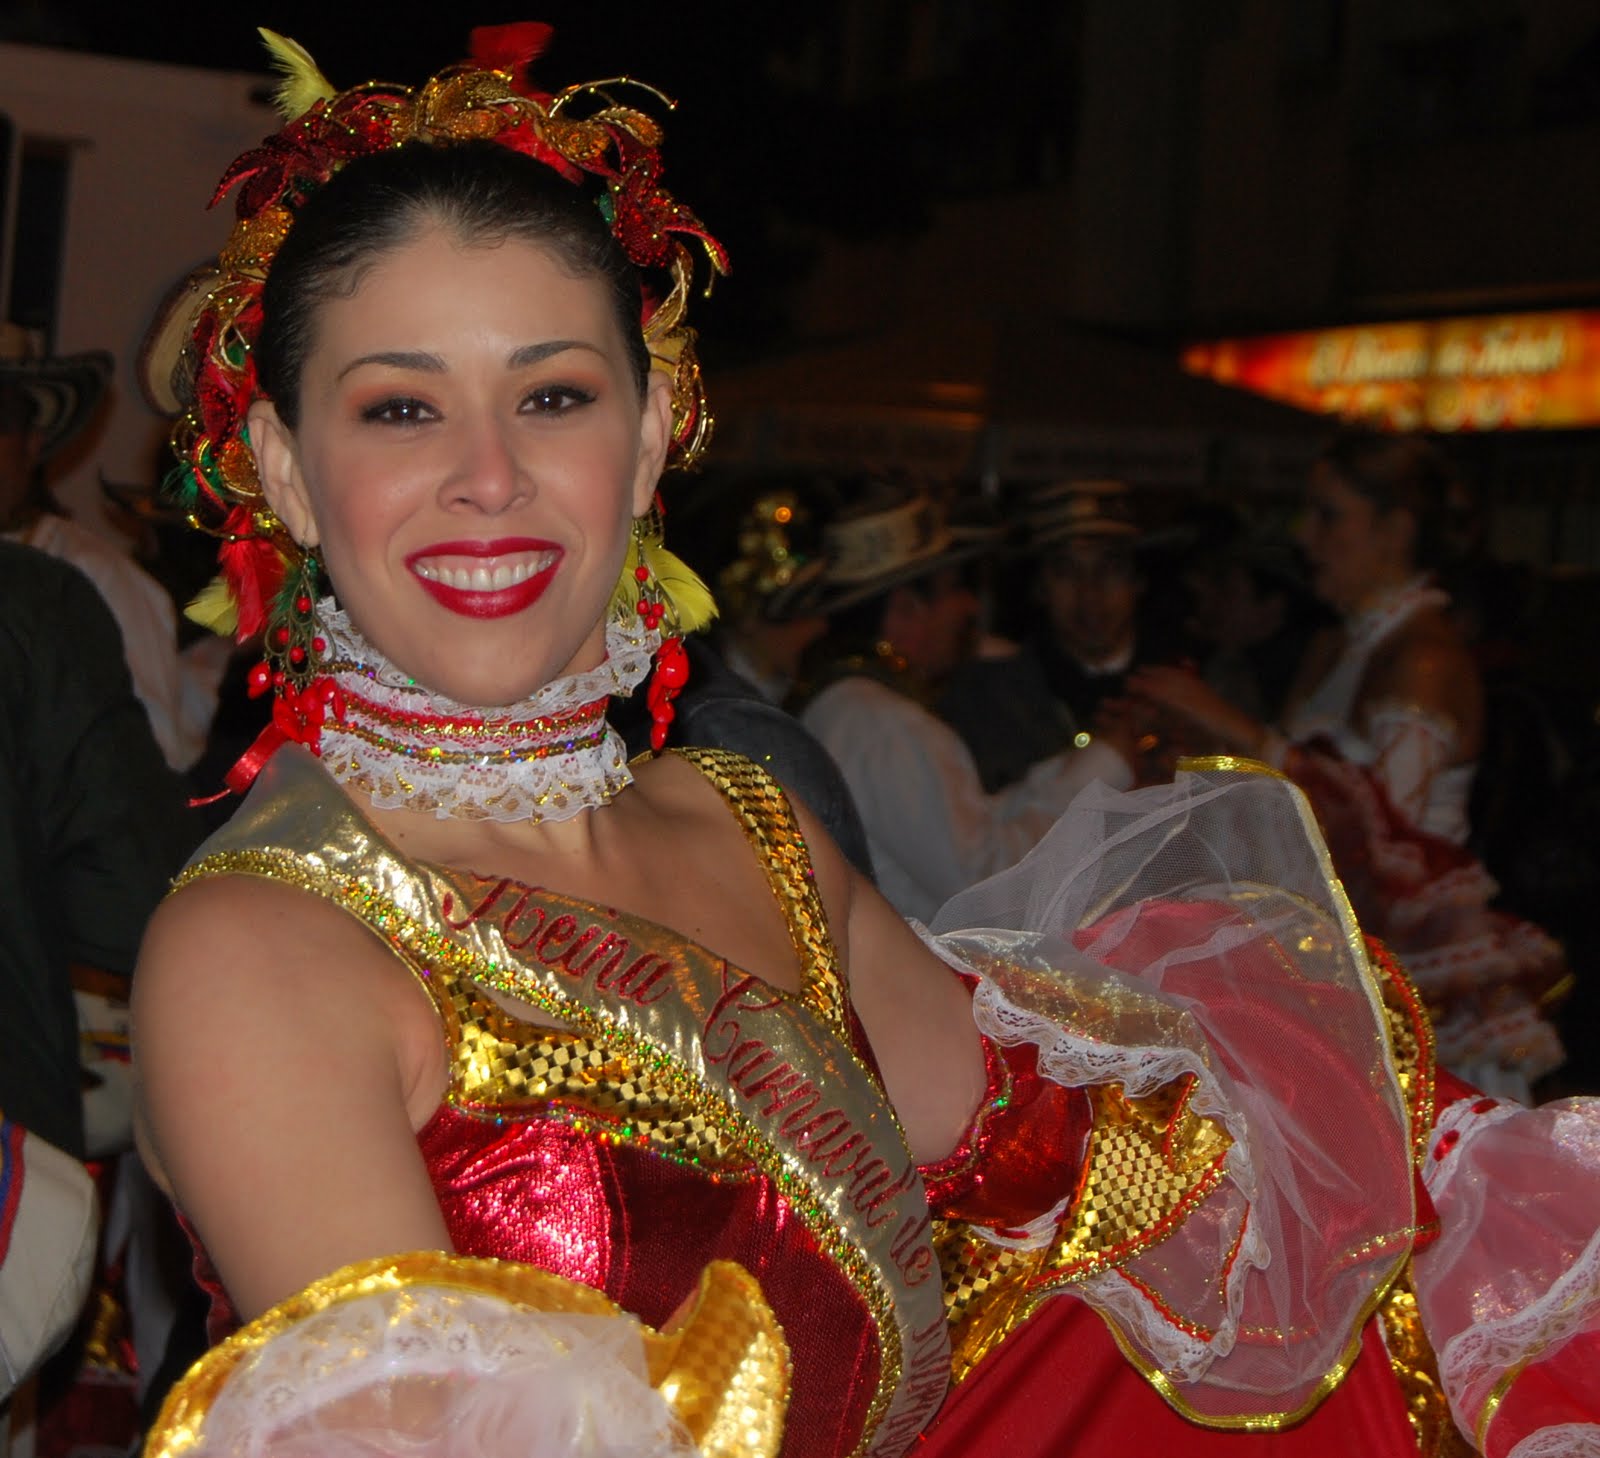 Fotografías de un Aficionado Reina del Carnaval de Barranquilla en